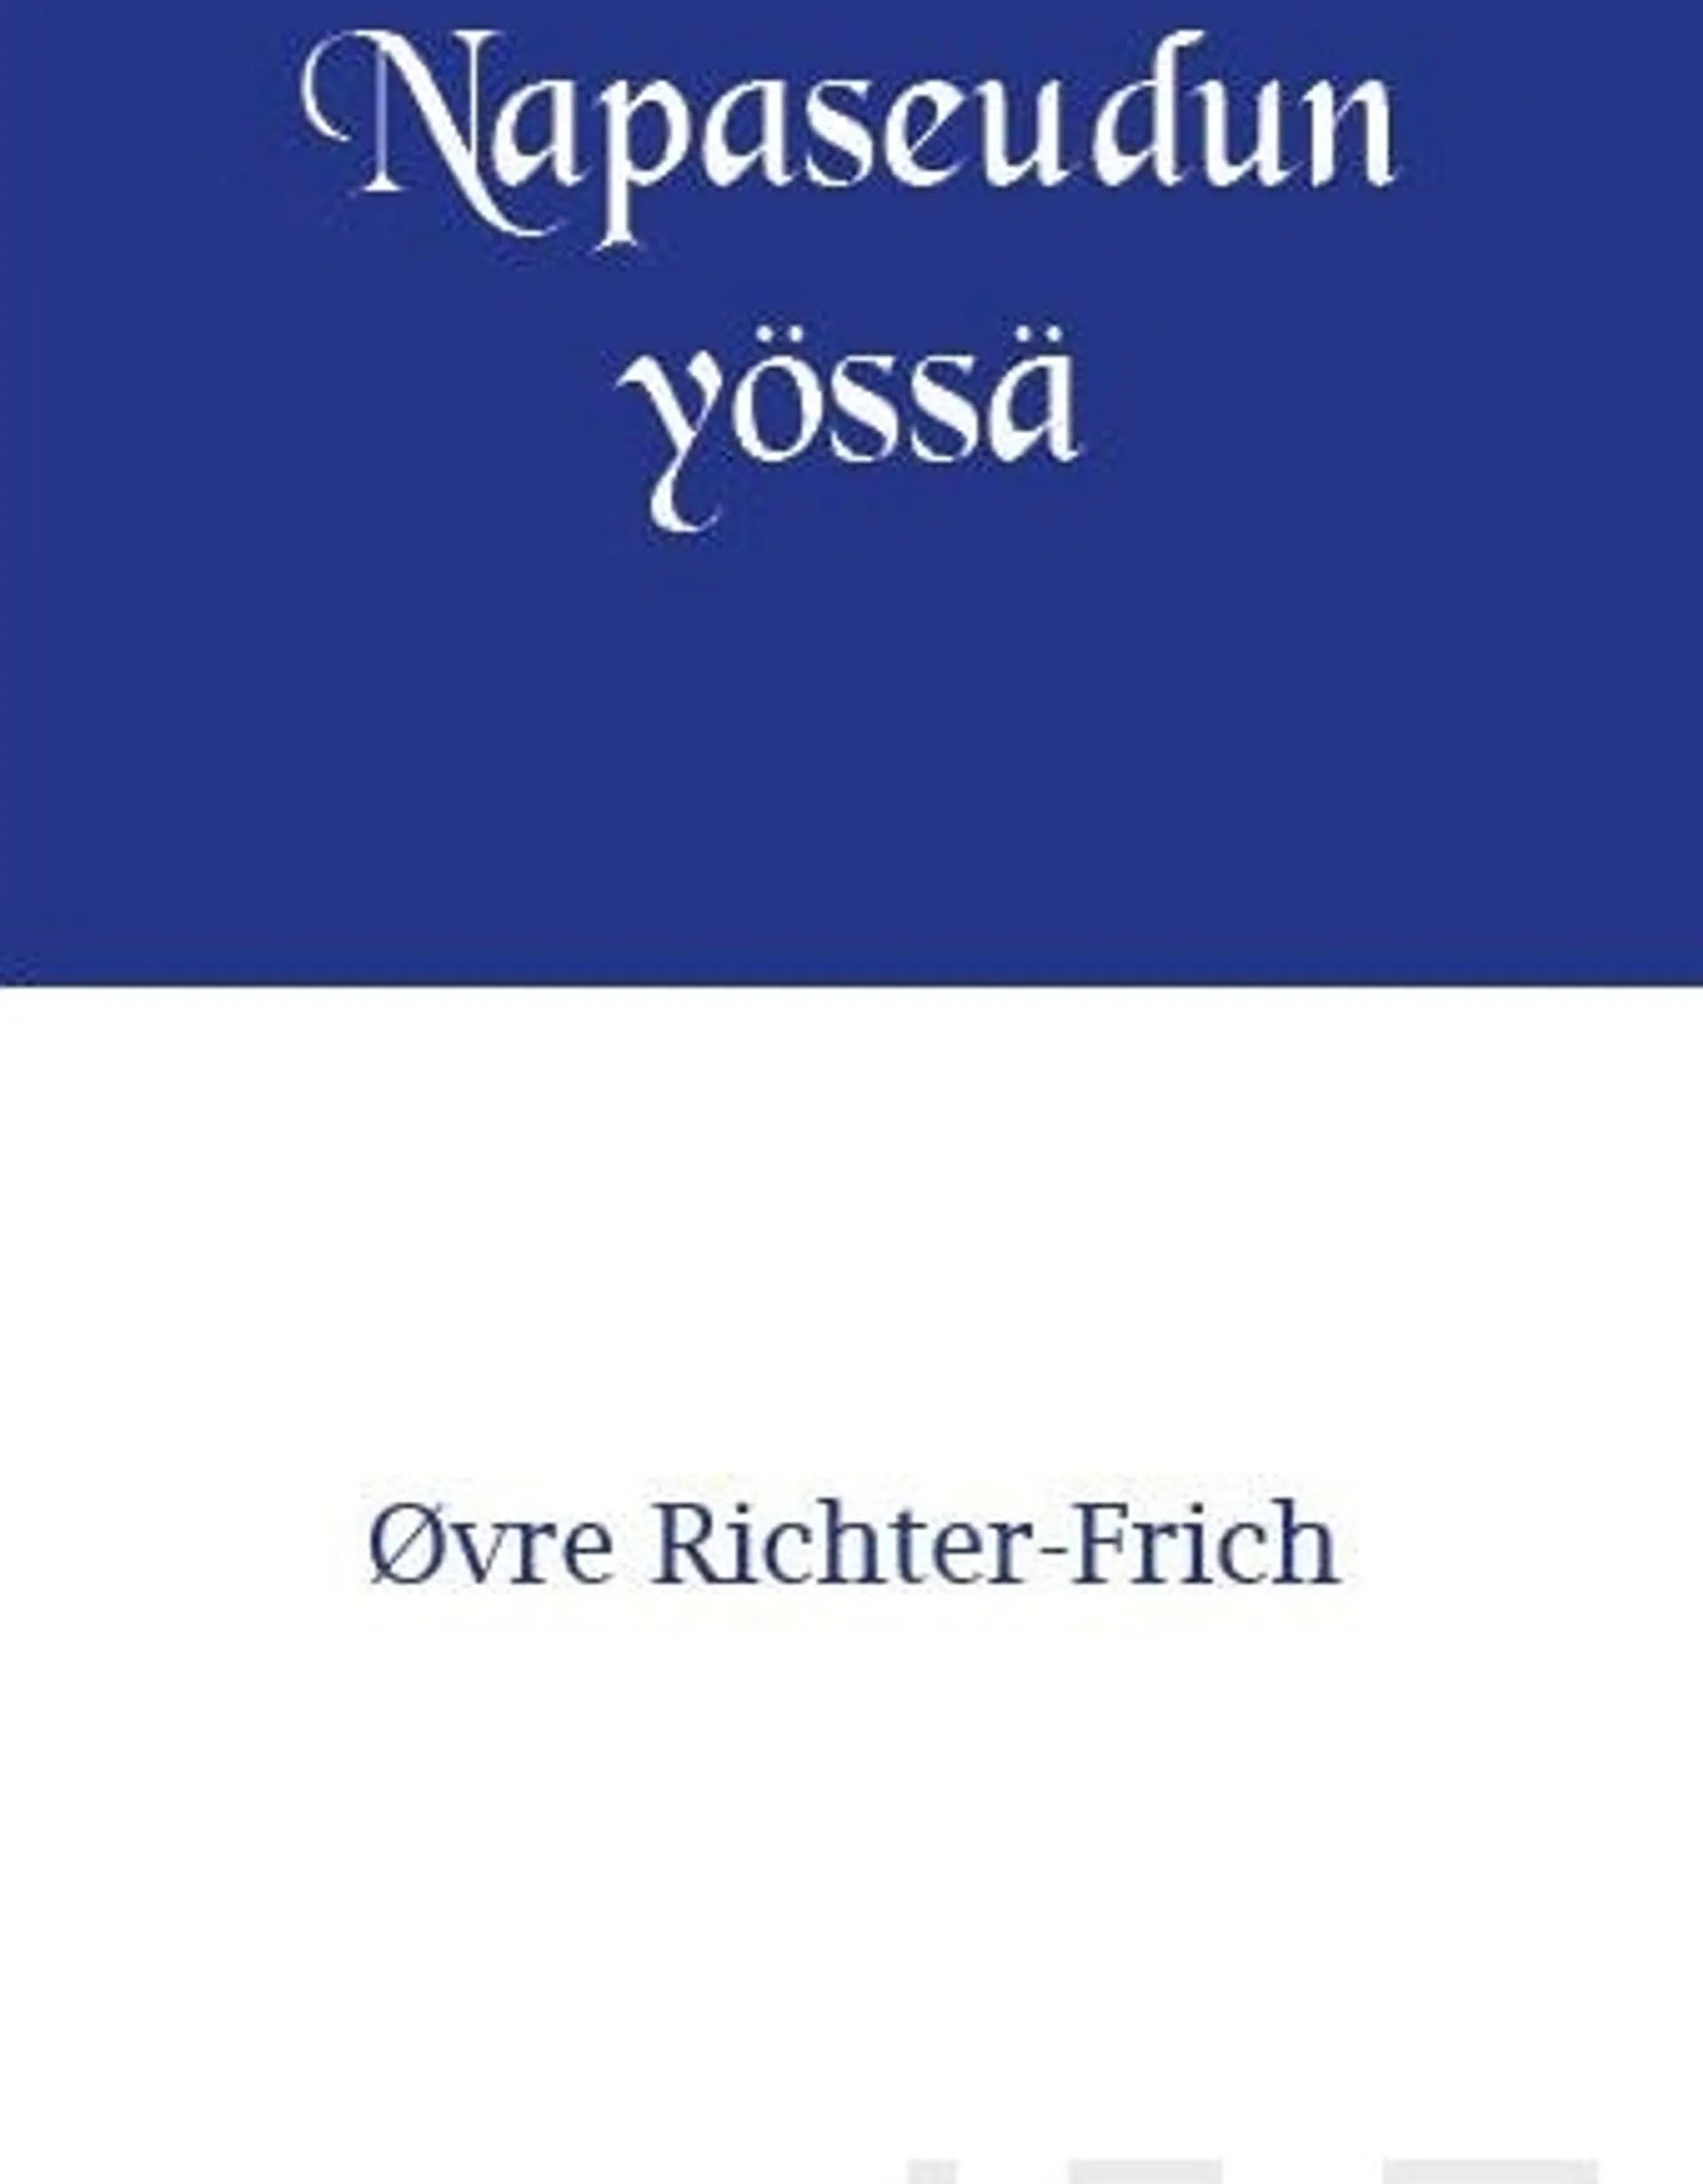 Richter-Frich, Napaseudun yössä